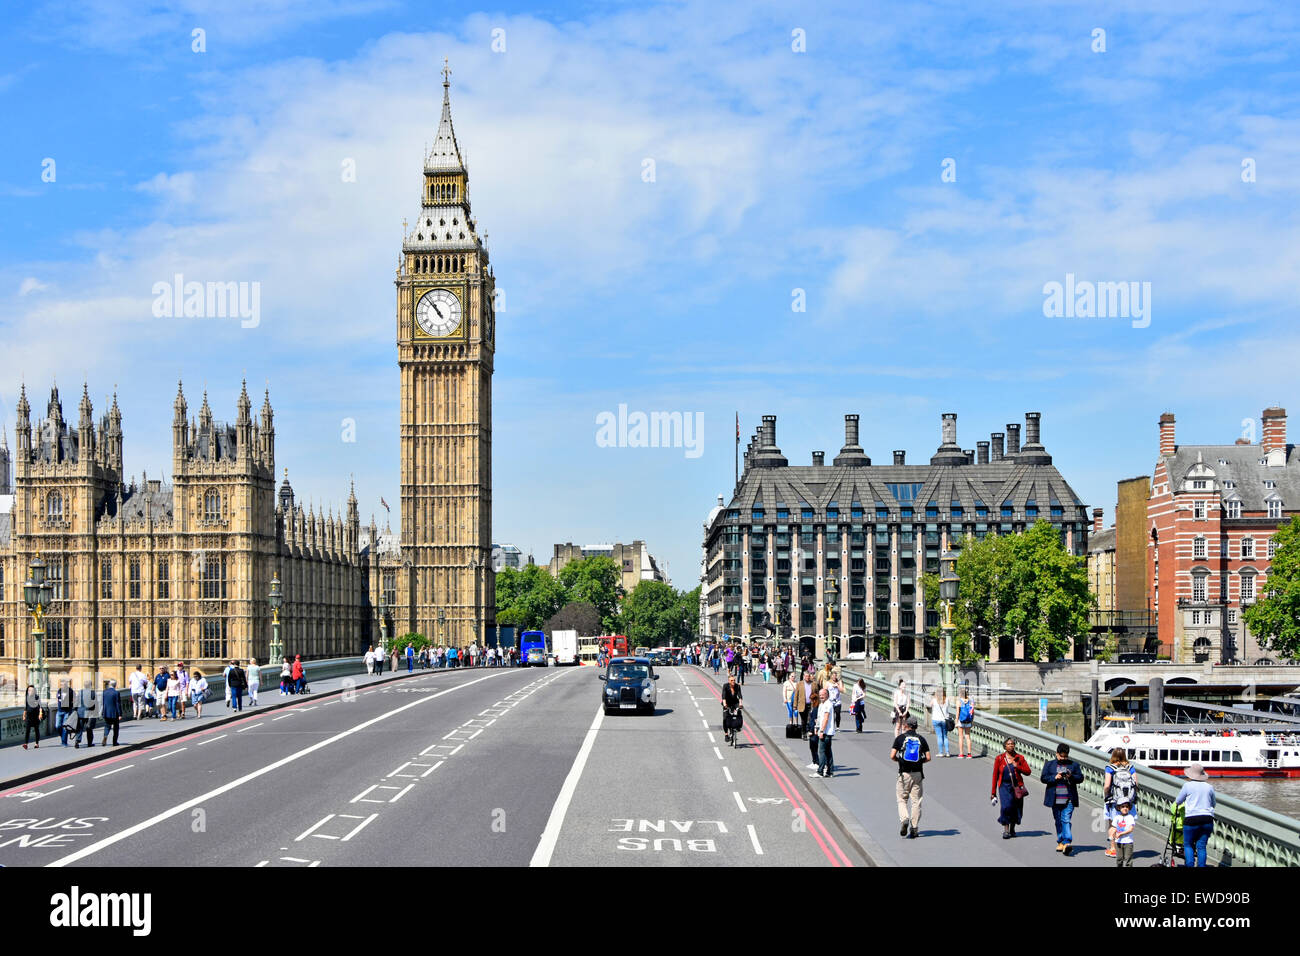 Cielo blu che guarda giù sul Westminster Bridge con la torre dell'orologio del Big Ben Elizabeth, le Houses of Parliament e i deputati scuri Portcullis House Londra Inghilterra, Regno Unito Foto Stock